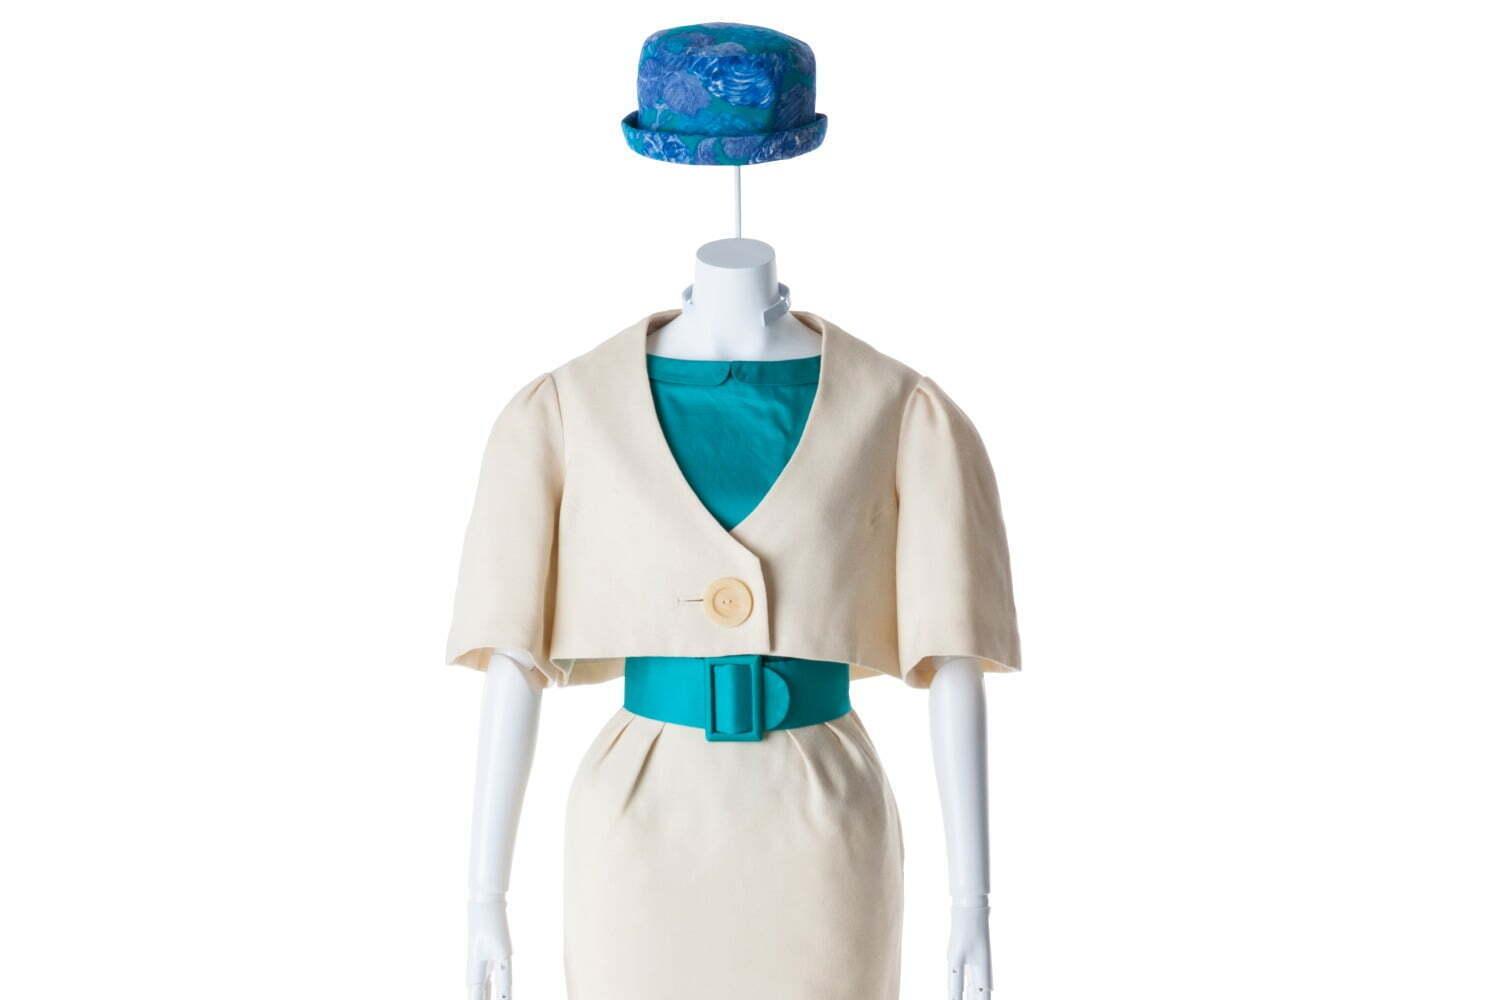 髙田賢三の軌跡を辿る回顧展が文化学園服飾博物館で、1970～80年代パリモードを牽引した服飾作品など 